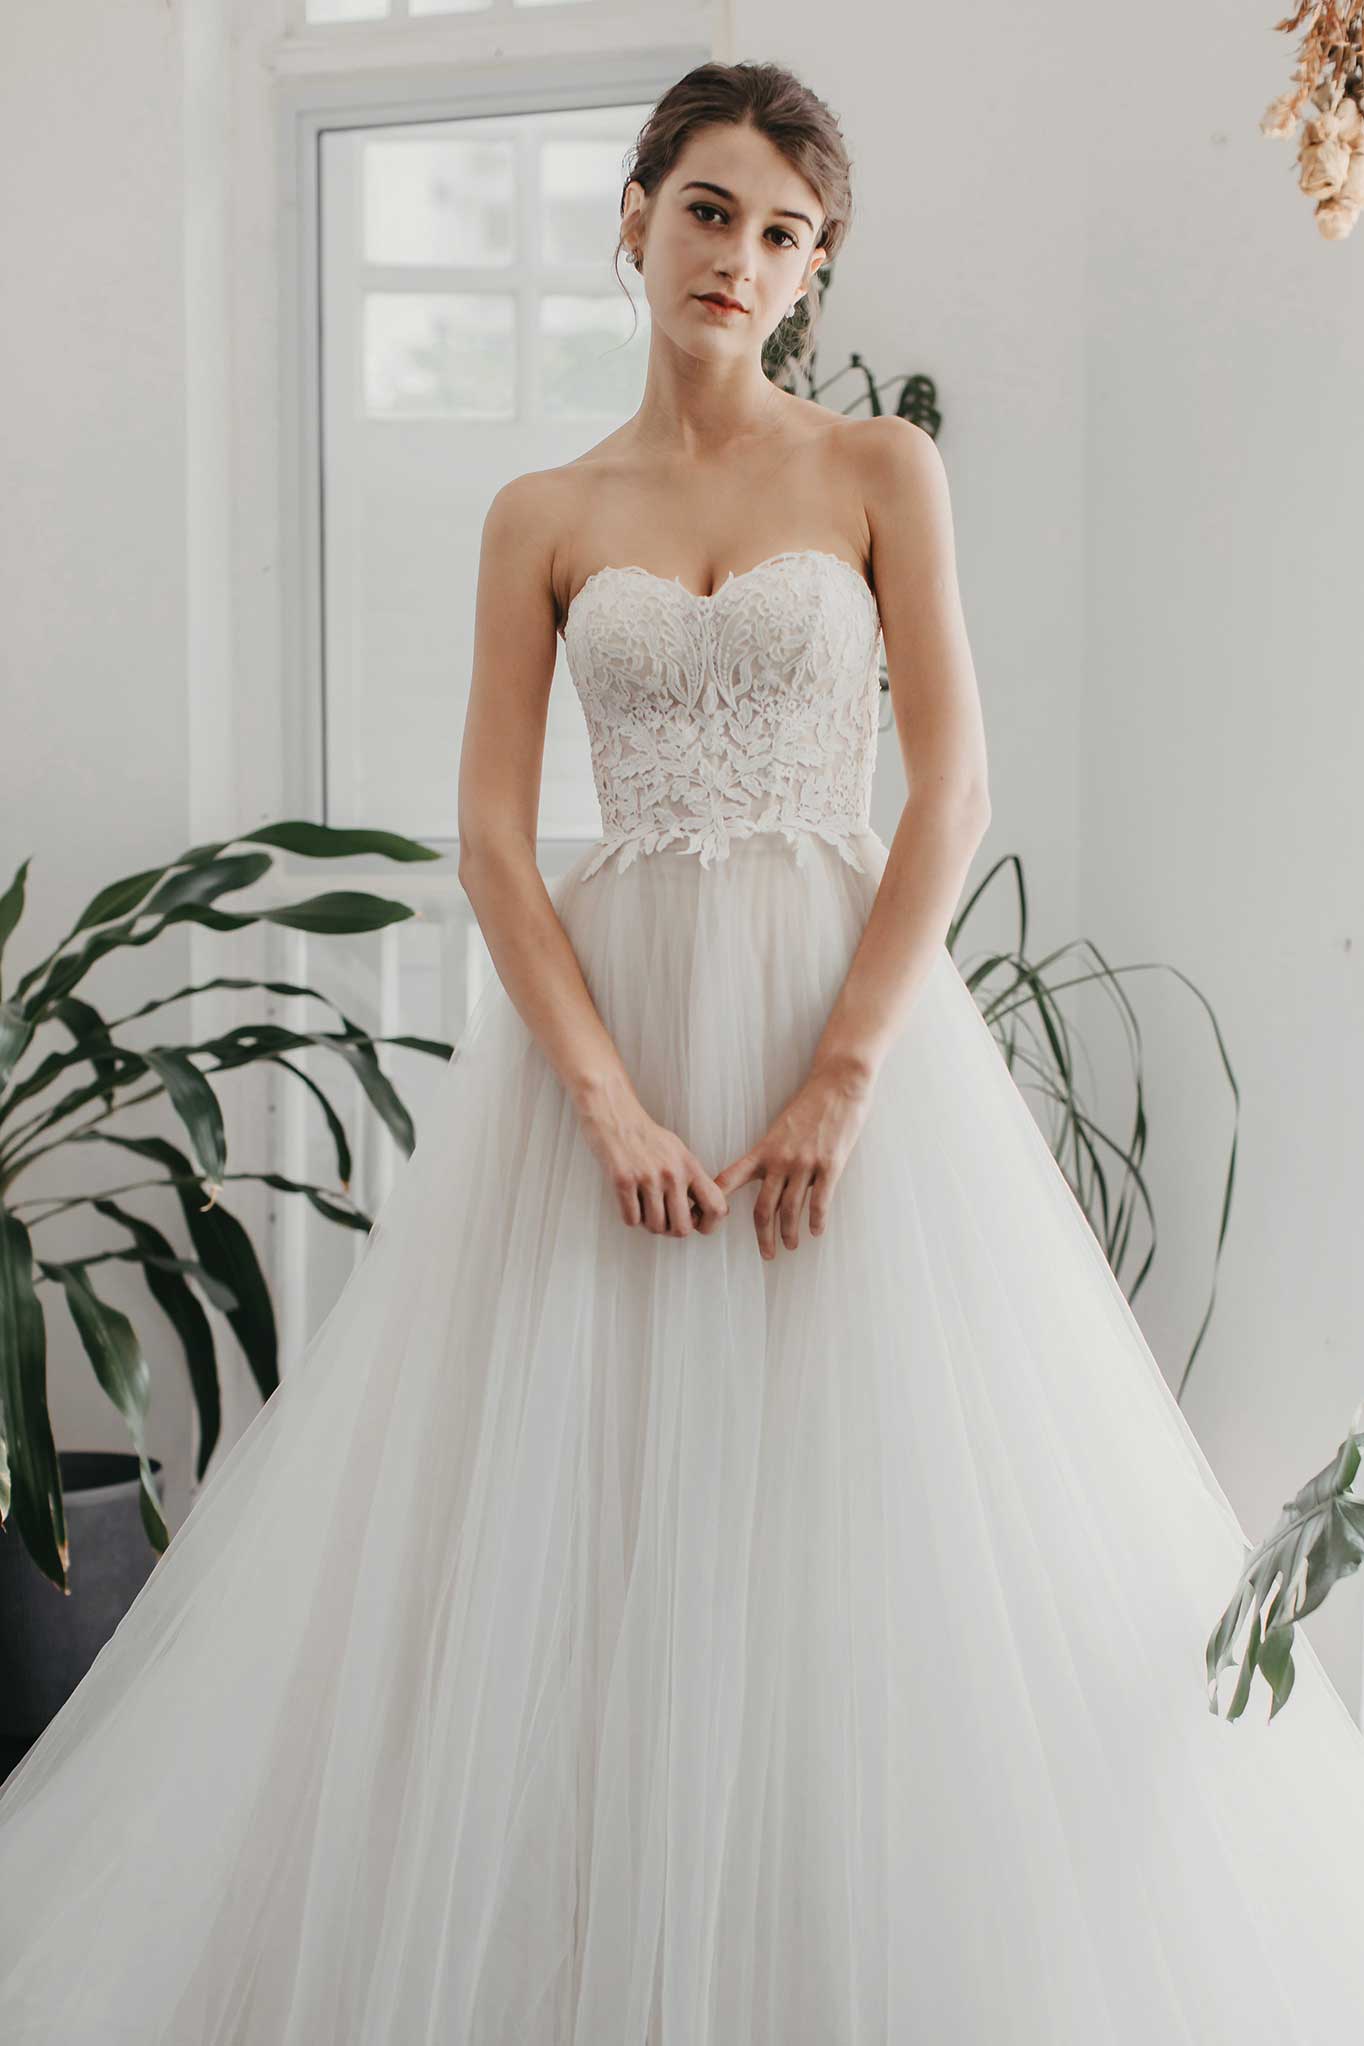 Odelia-wedding-dress-weddingdress-bridalgown-6_